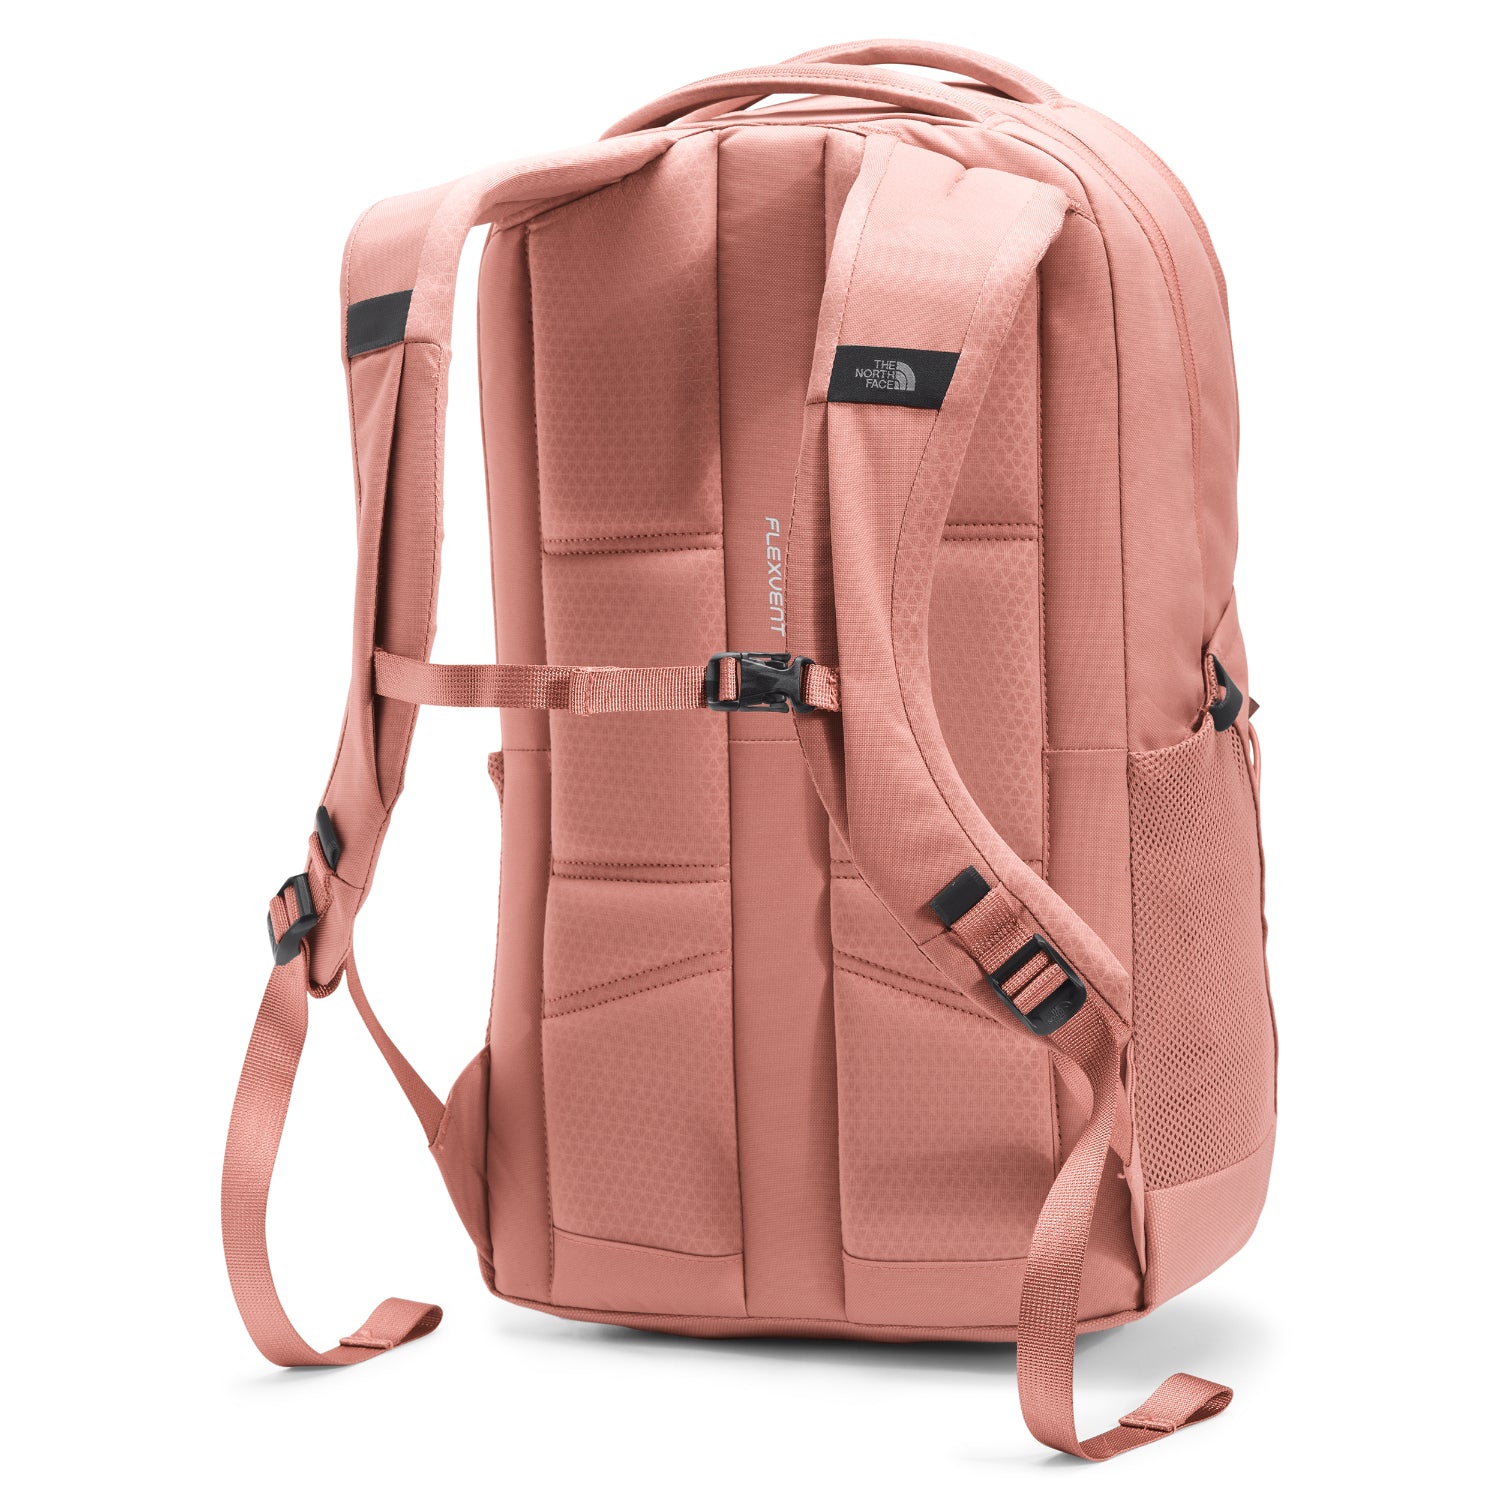 pink jester backpack black grey